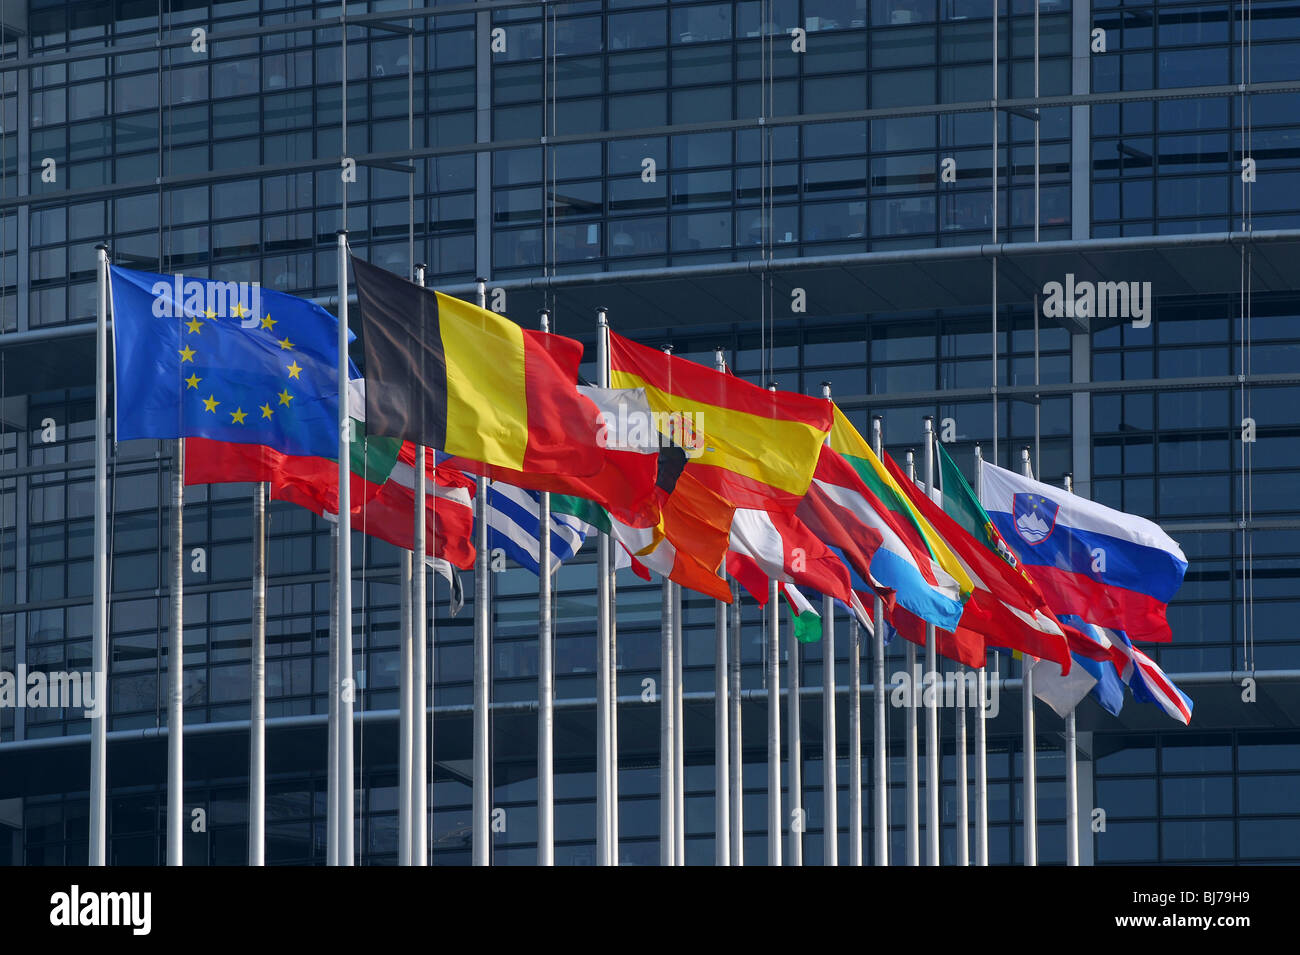 Flaggen der Mitgliedstaaten der Europäischen Union in Fornt des Europäischen Parlaments, Straßburg, Frankreich Stockfoto